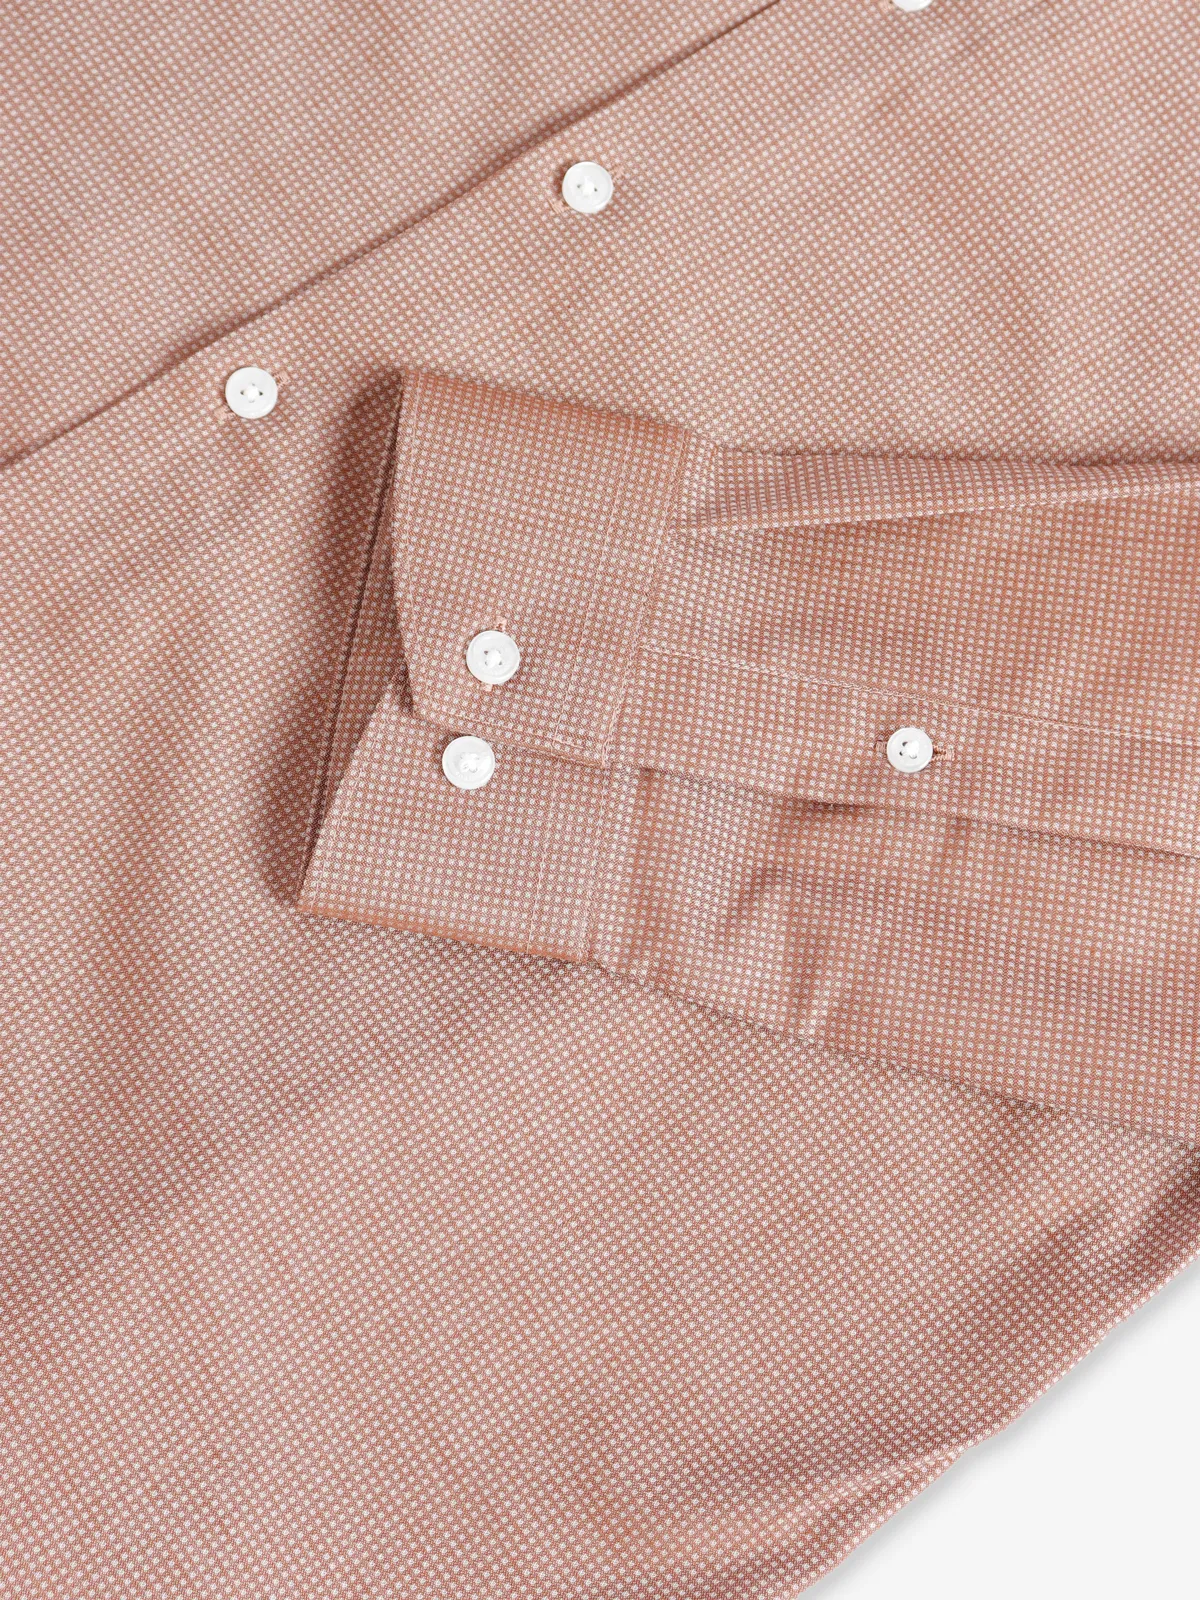 Van Heusen peach texture cotton shirt